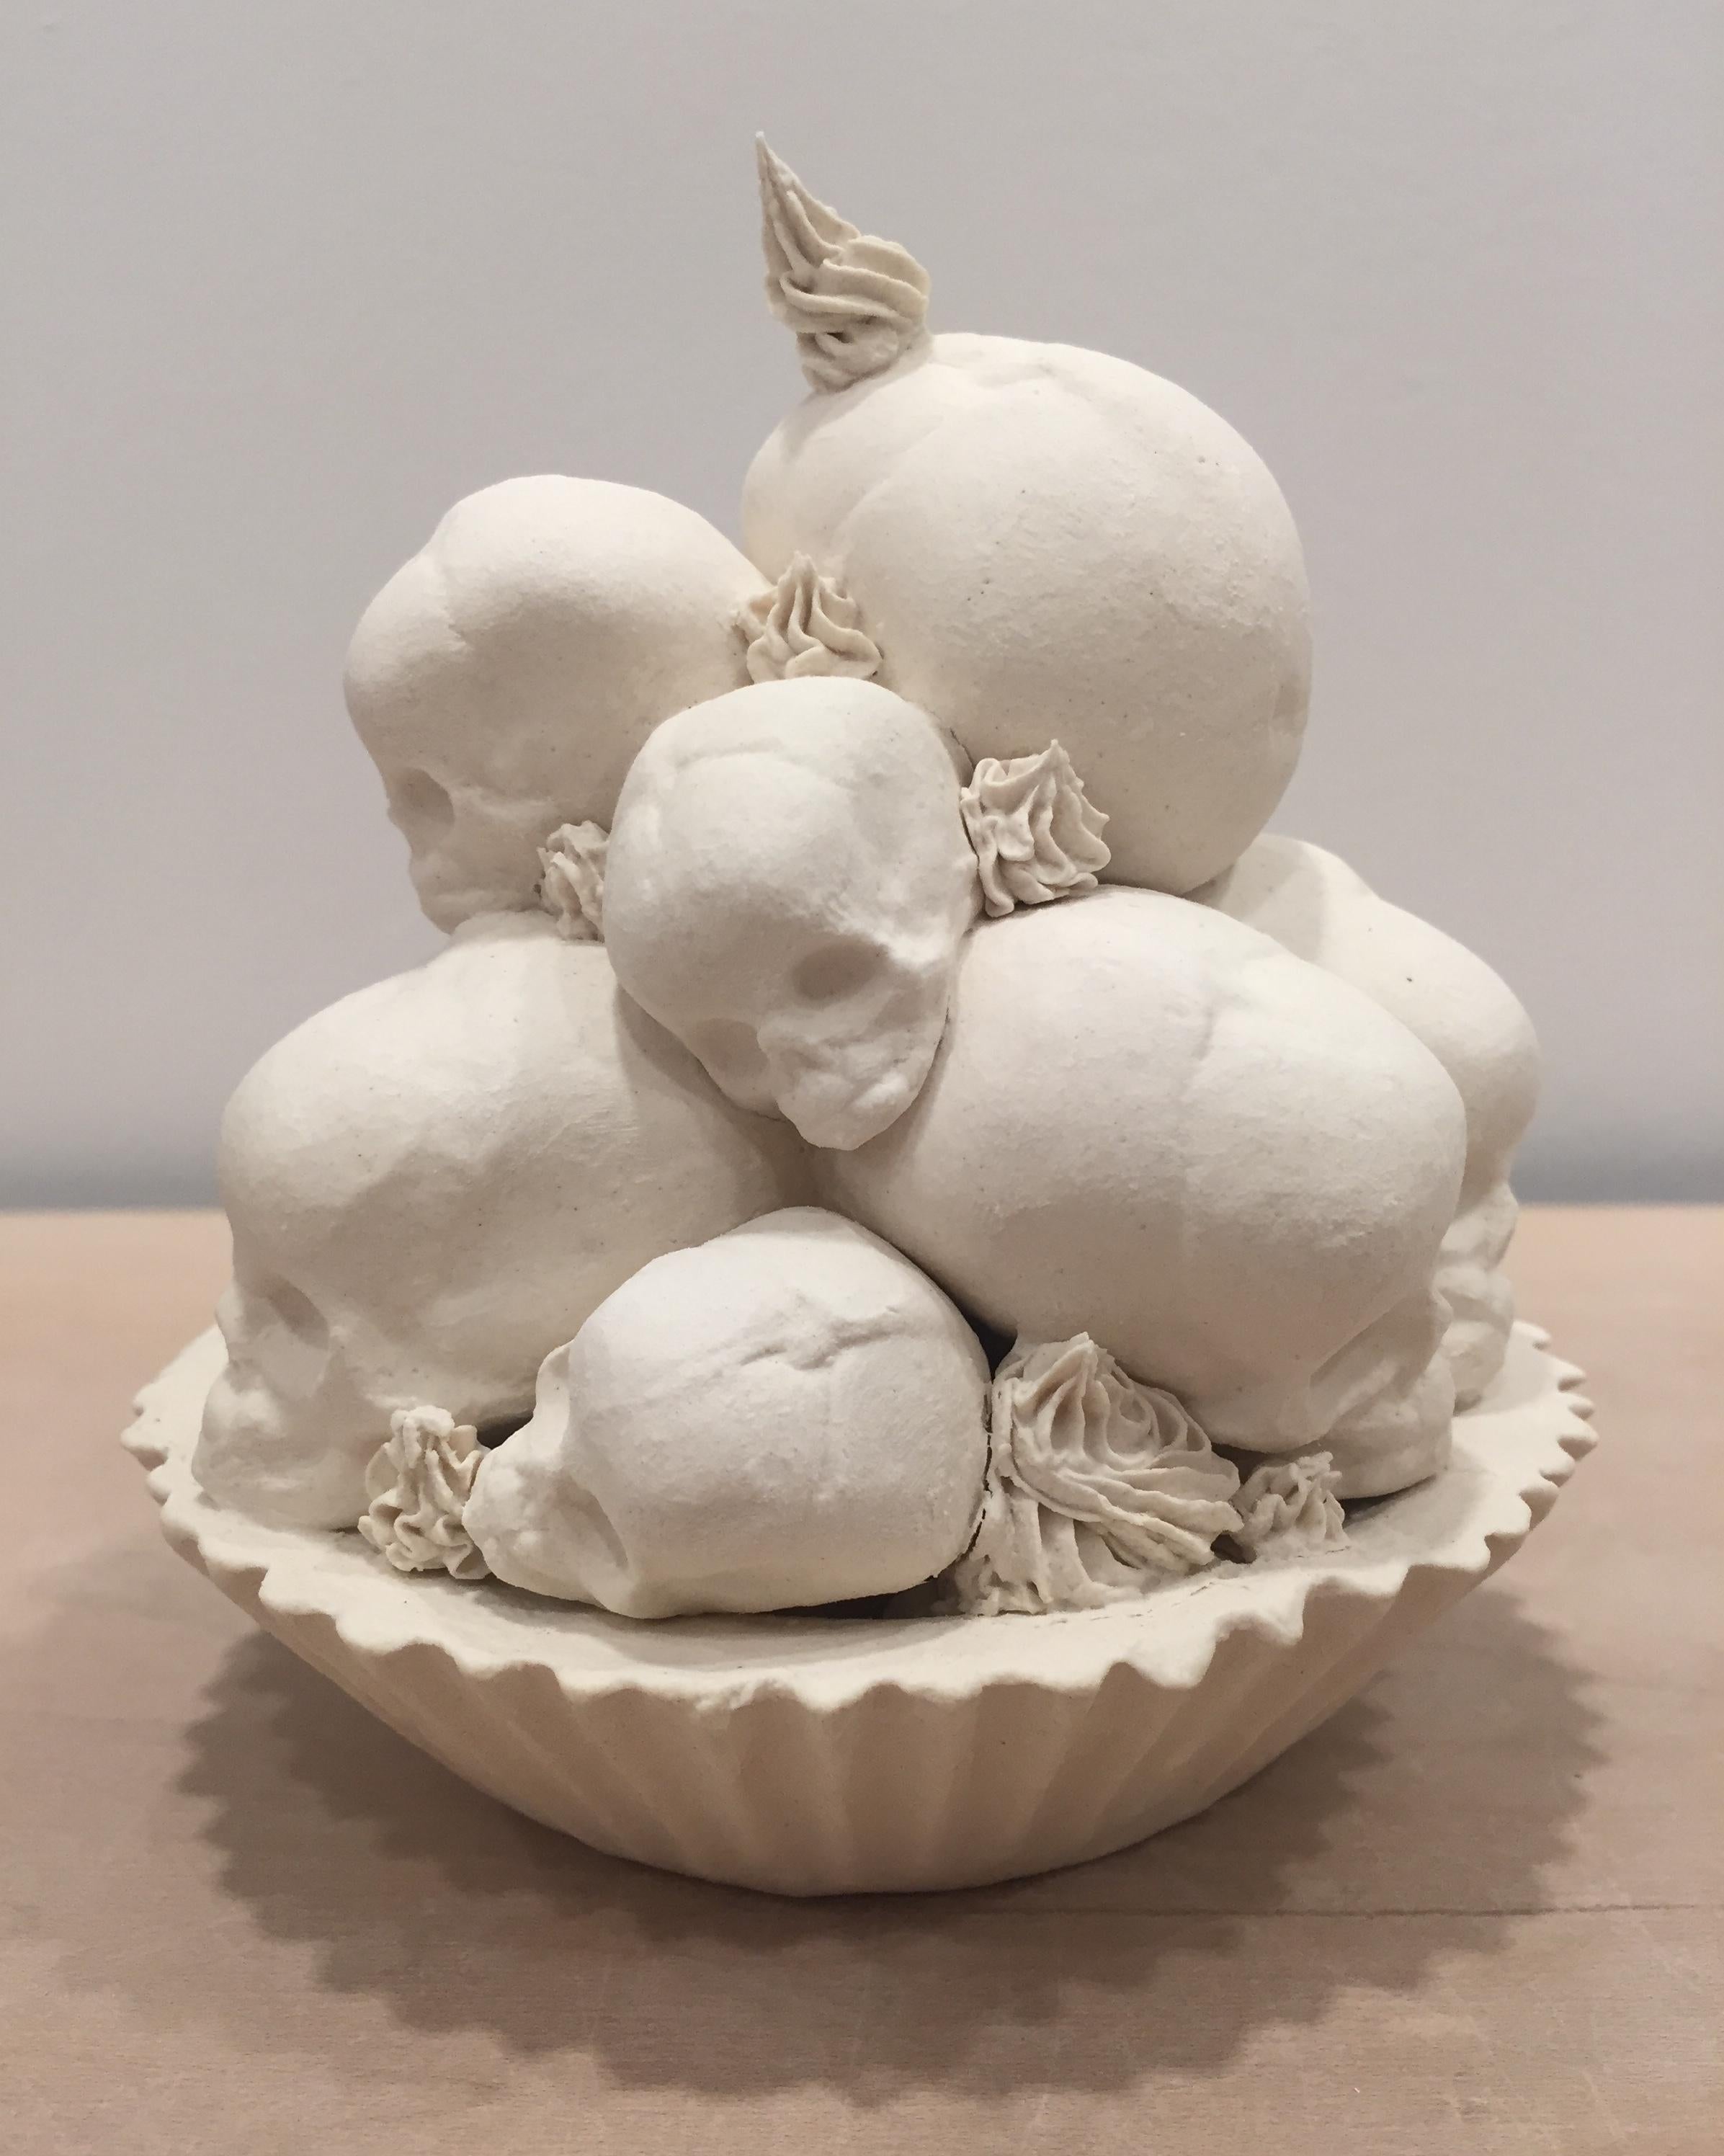 Fruit Tart - Contemporary Sculpture by Jacqueline Tse